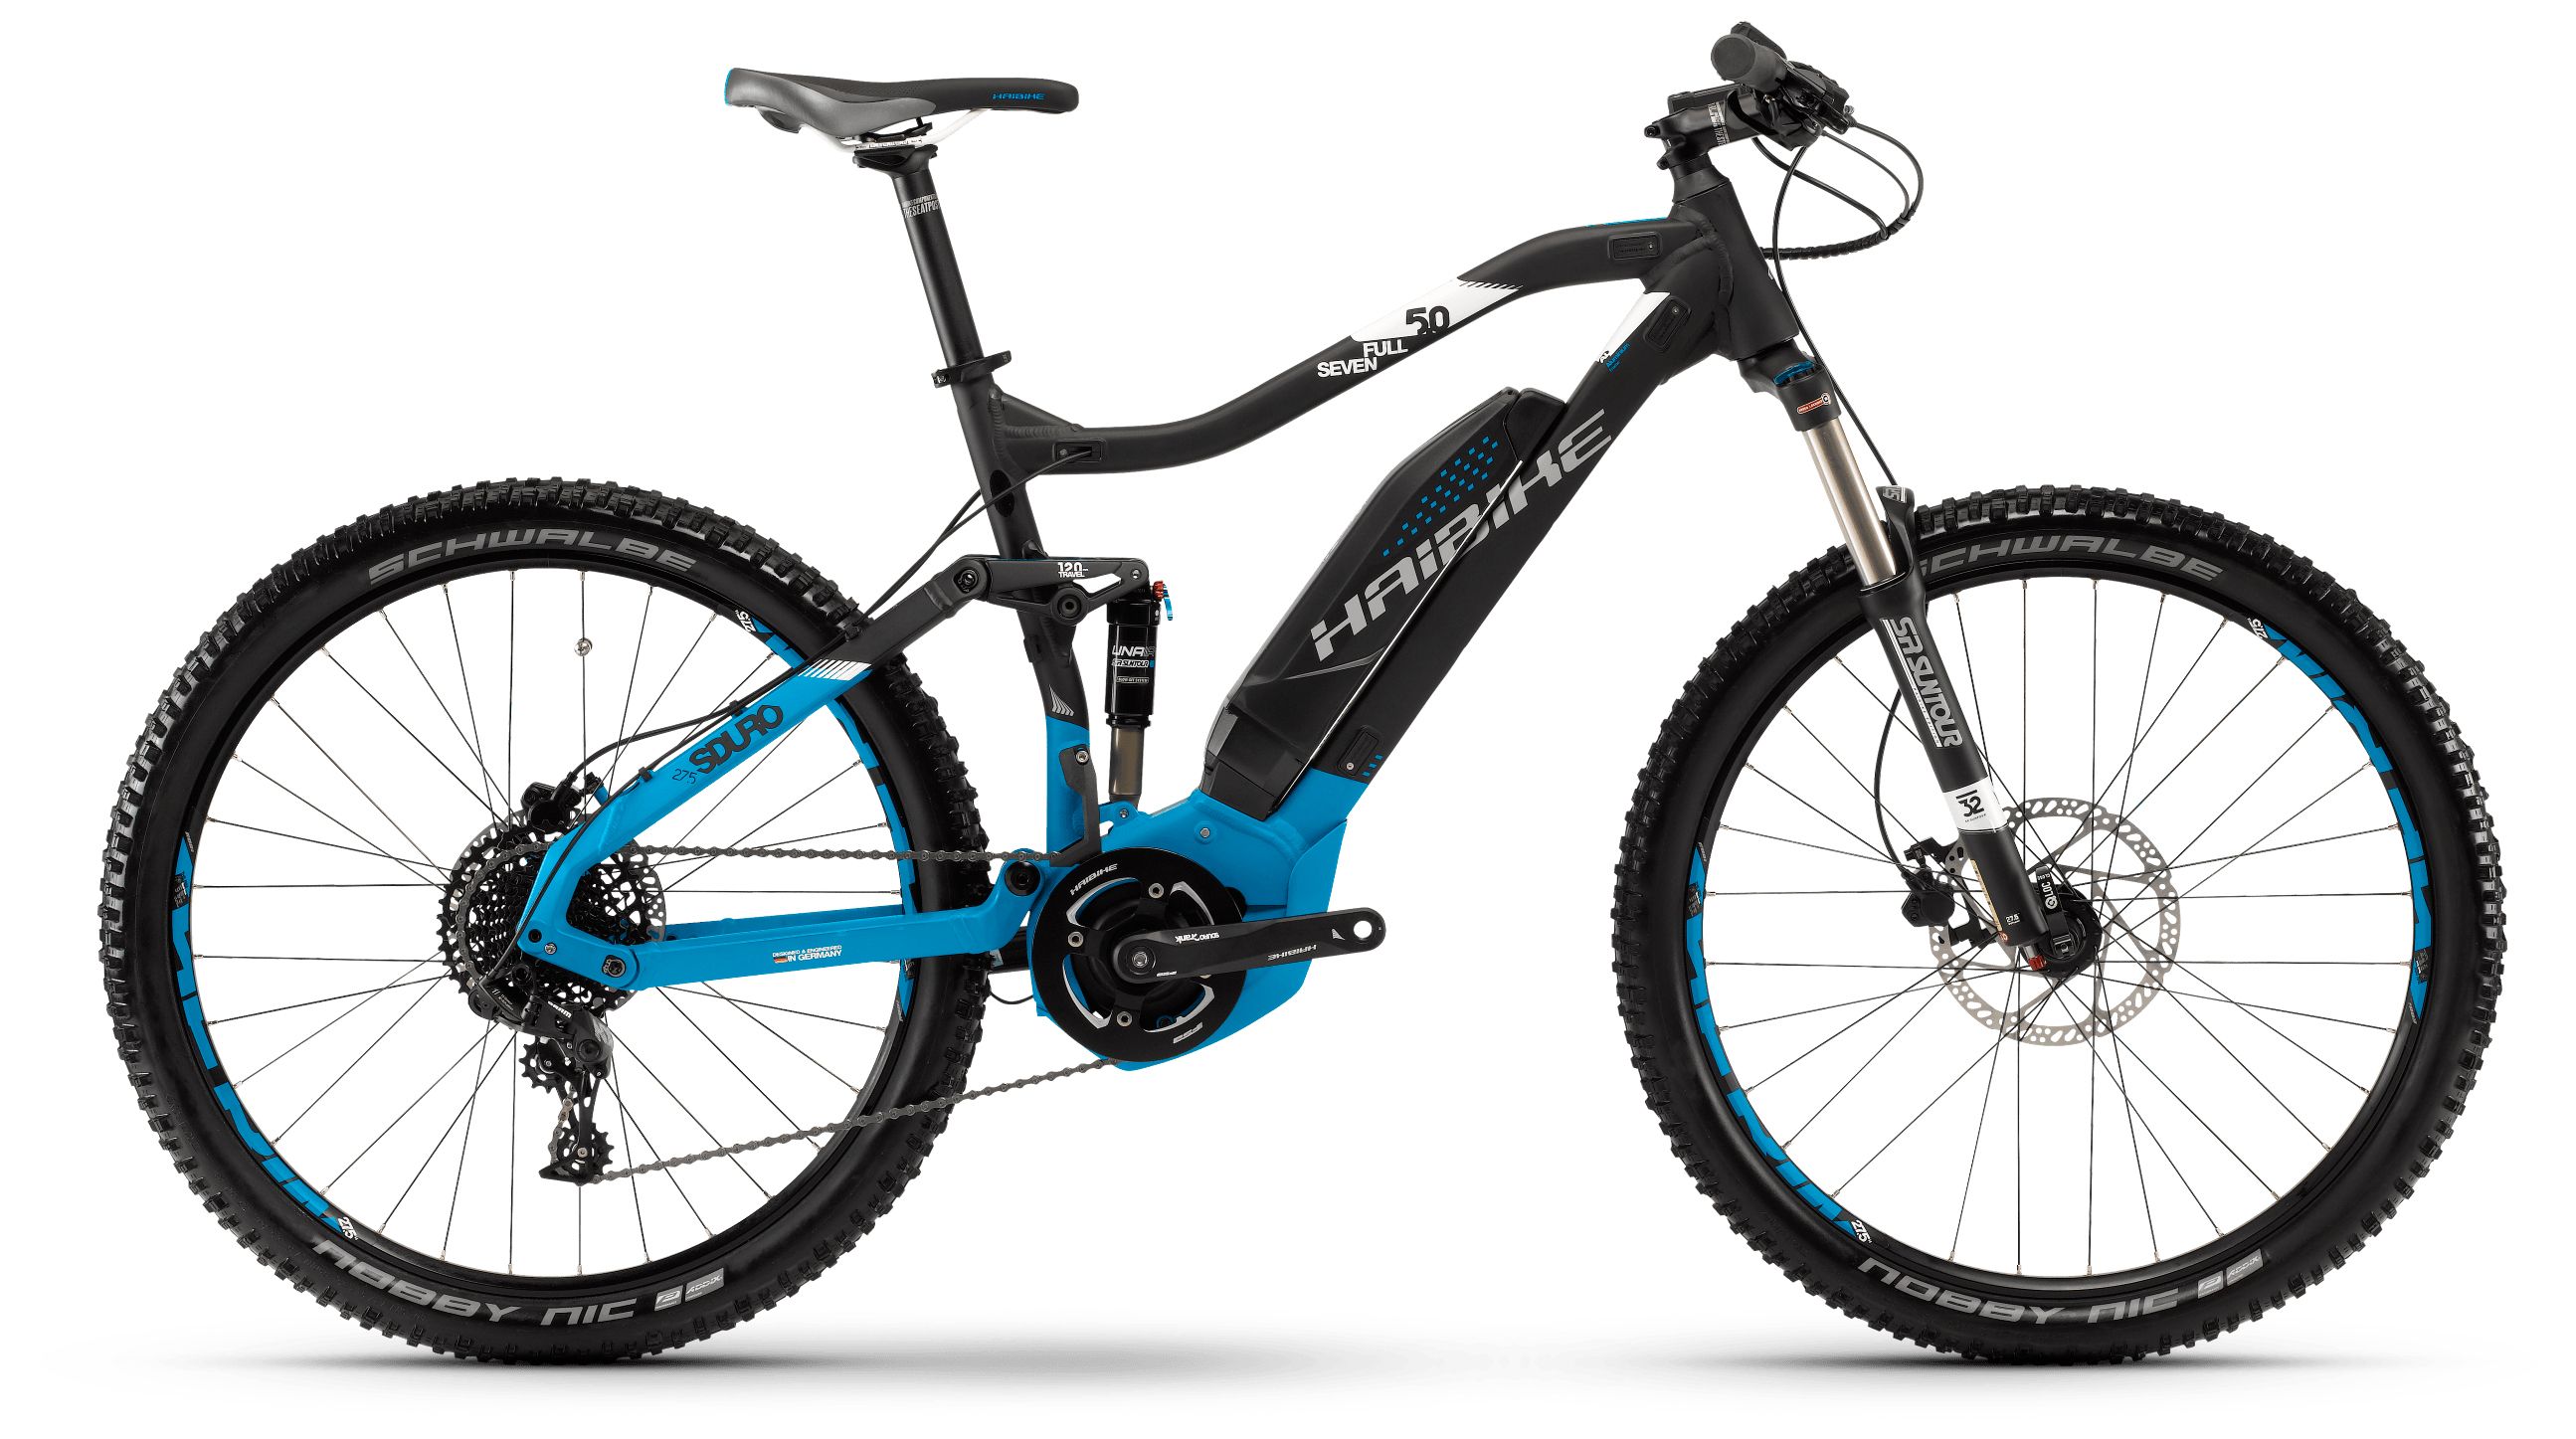  Отзывы о Горном велосипеде Haibike Sduro FullSeven 5.0 400Wh 11s NX 2018